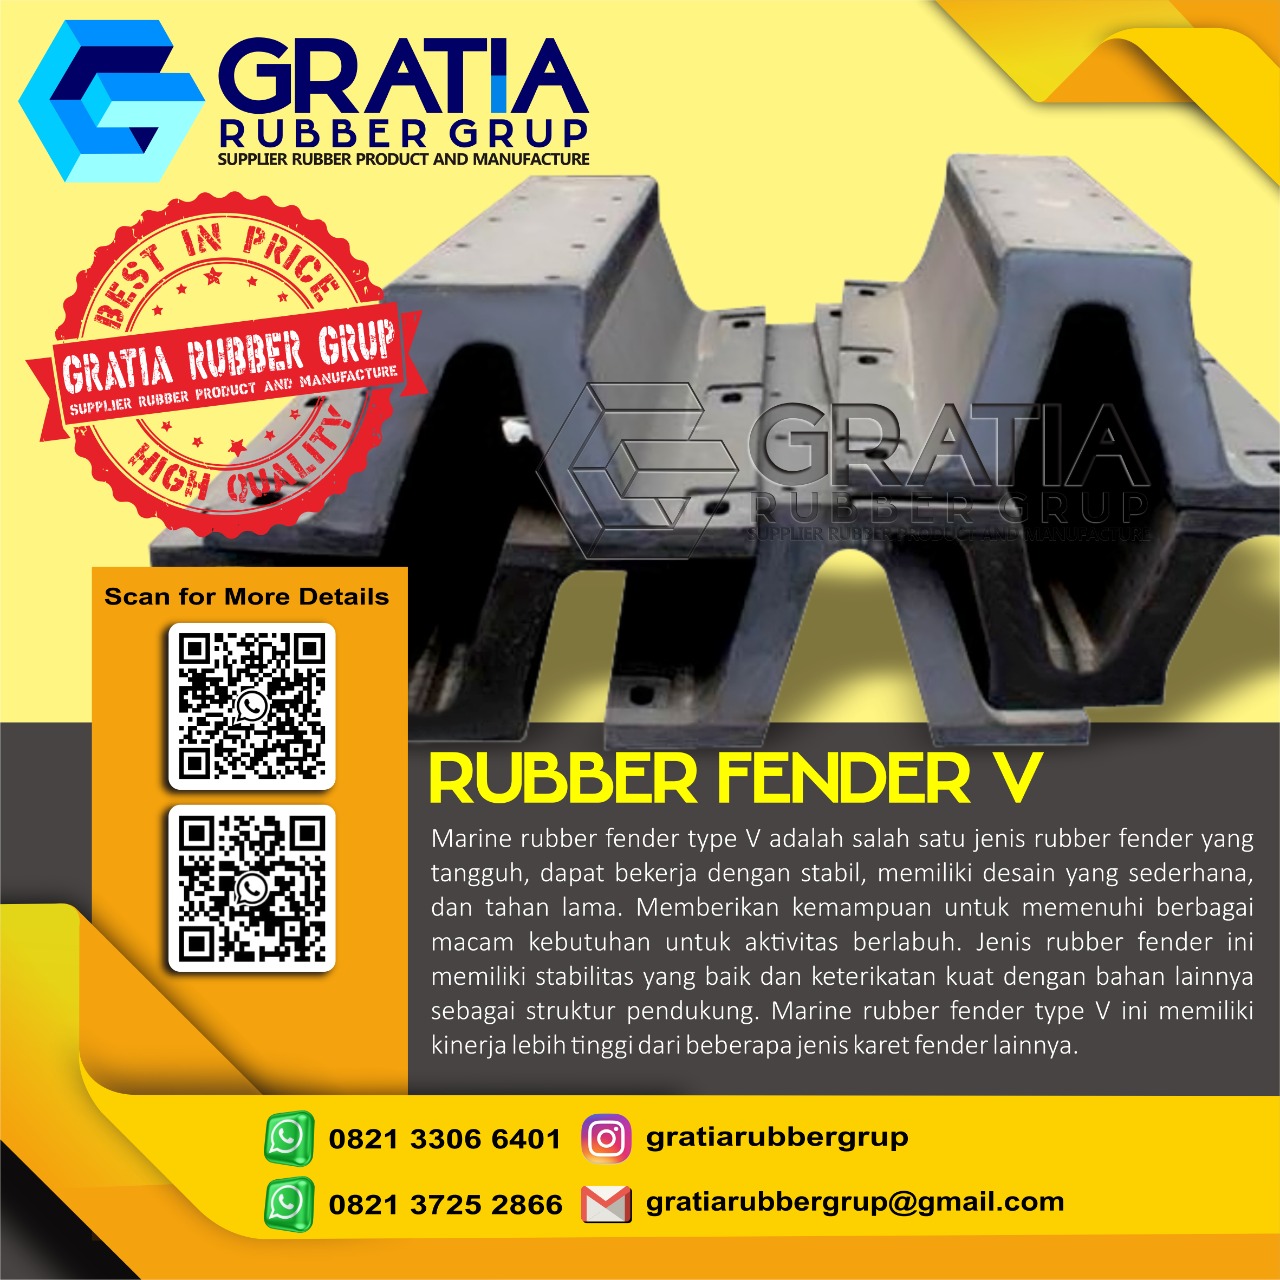 Harga Rubber Fender Terbaik  Melayani Pengiriman Ke Pariaman Sumatera Barat Hub 0821 3306 0461